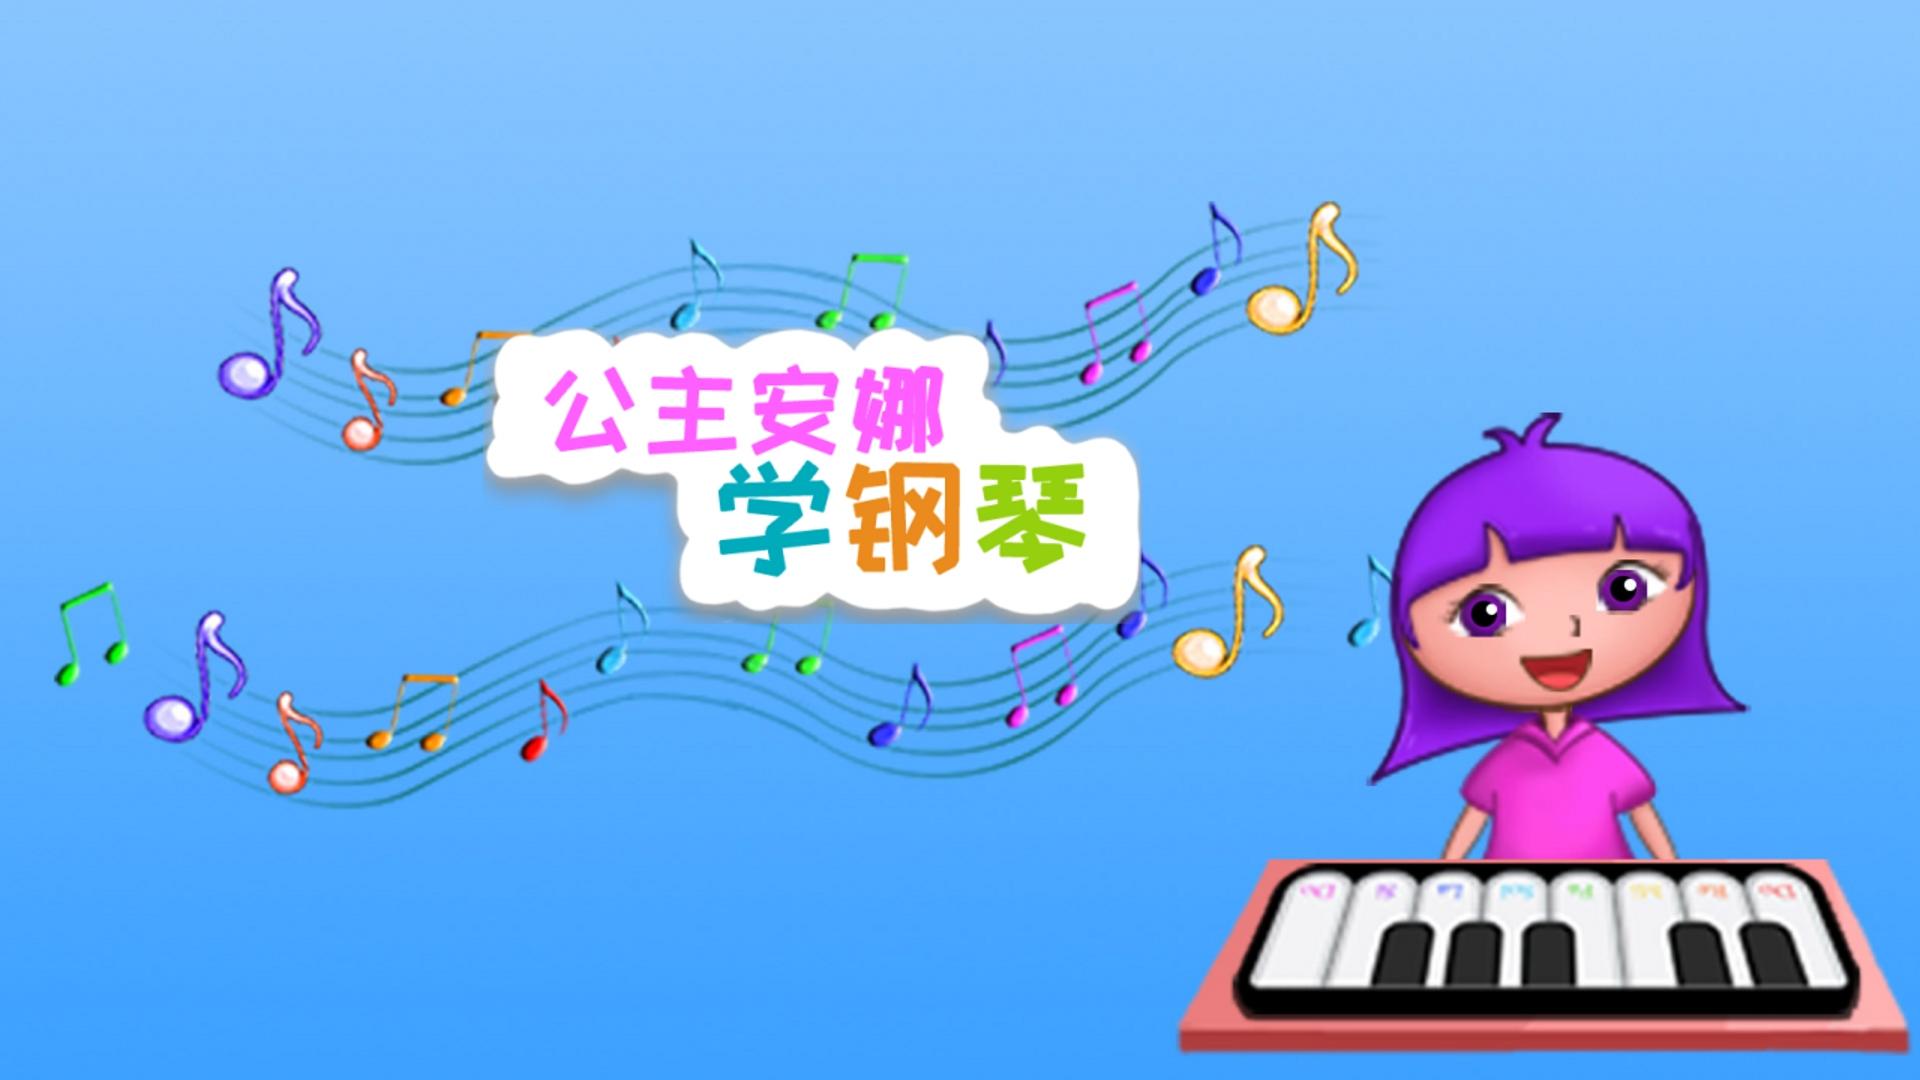 Banner of putri anna belajar piano 